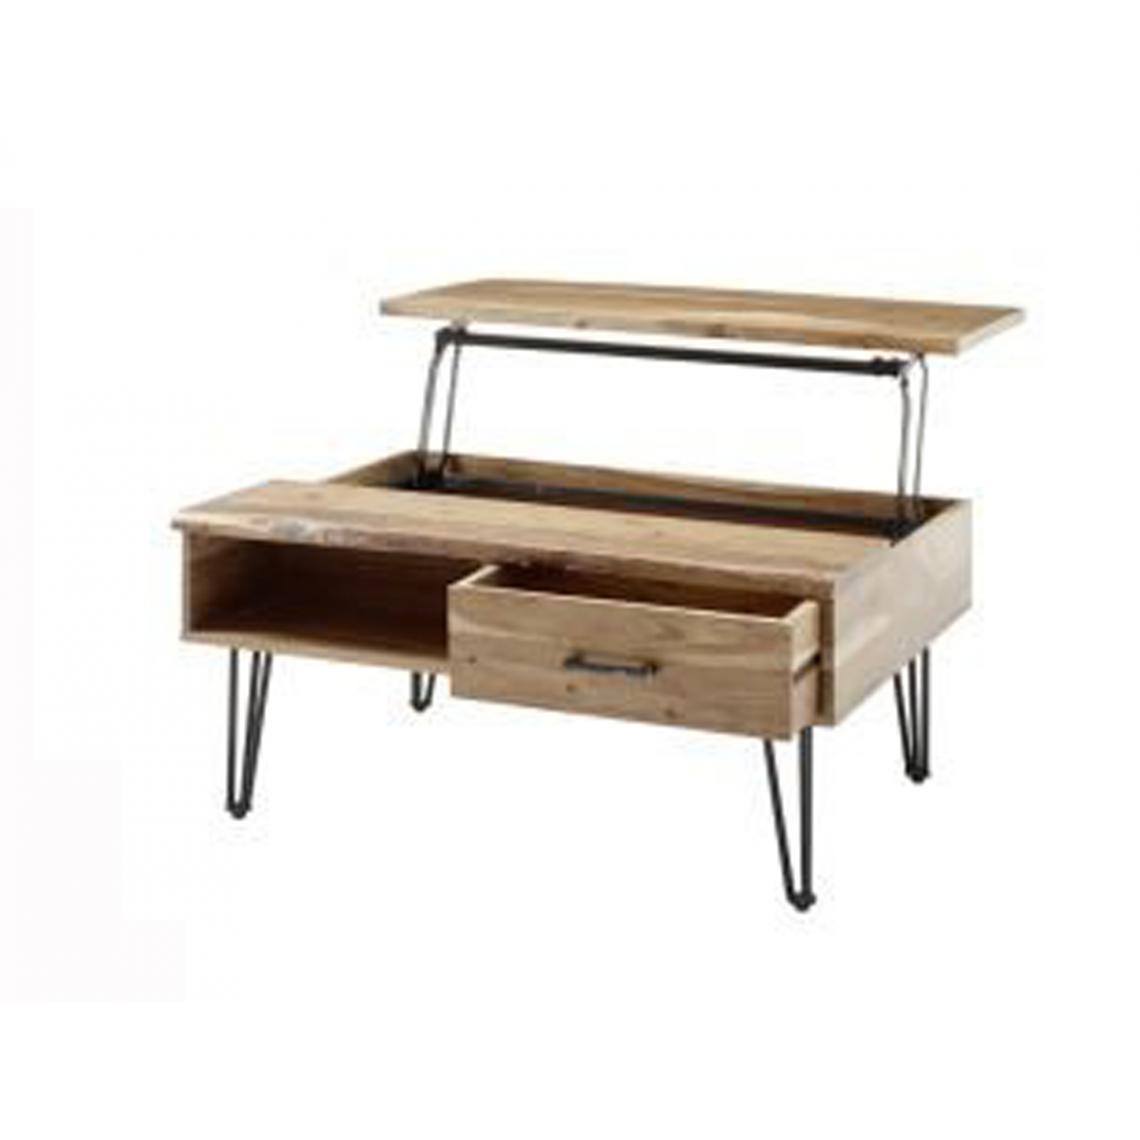 Pegane - Table basse modulable en bois d'acacia et fer - L.110 x H.50 x P.72 cm - Tables basses